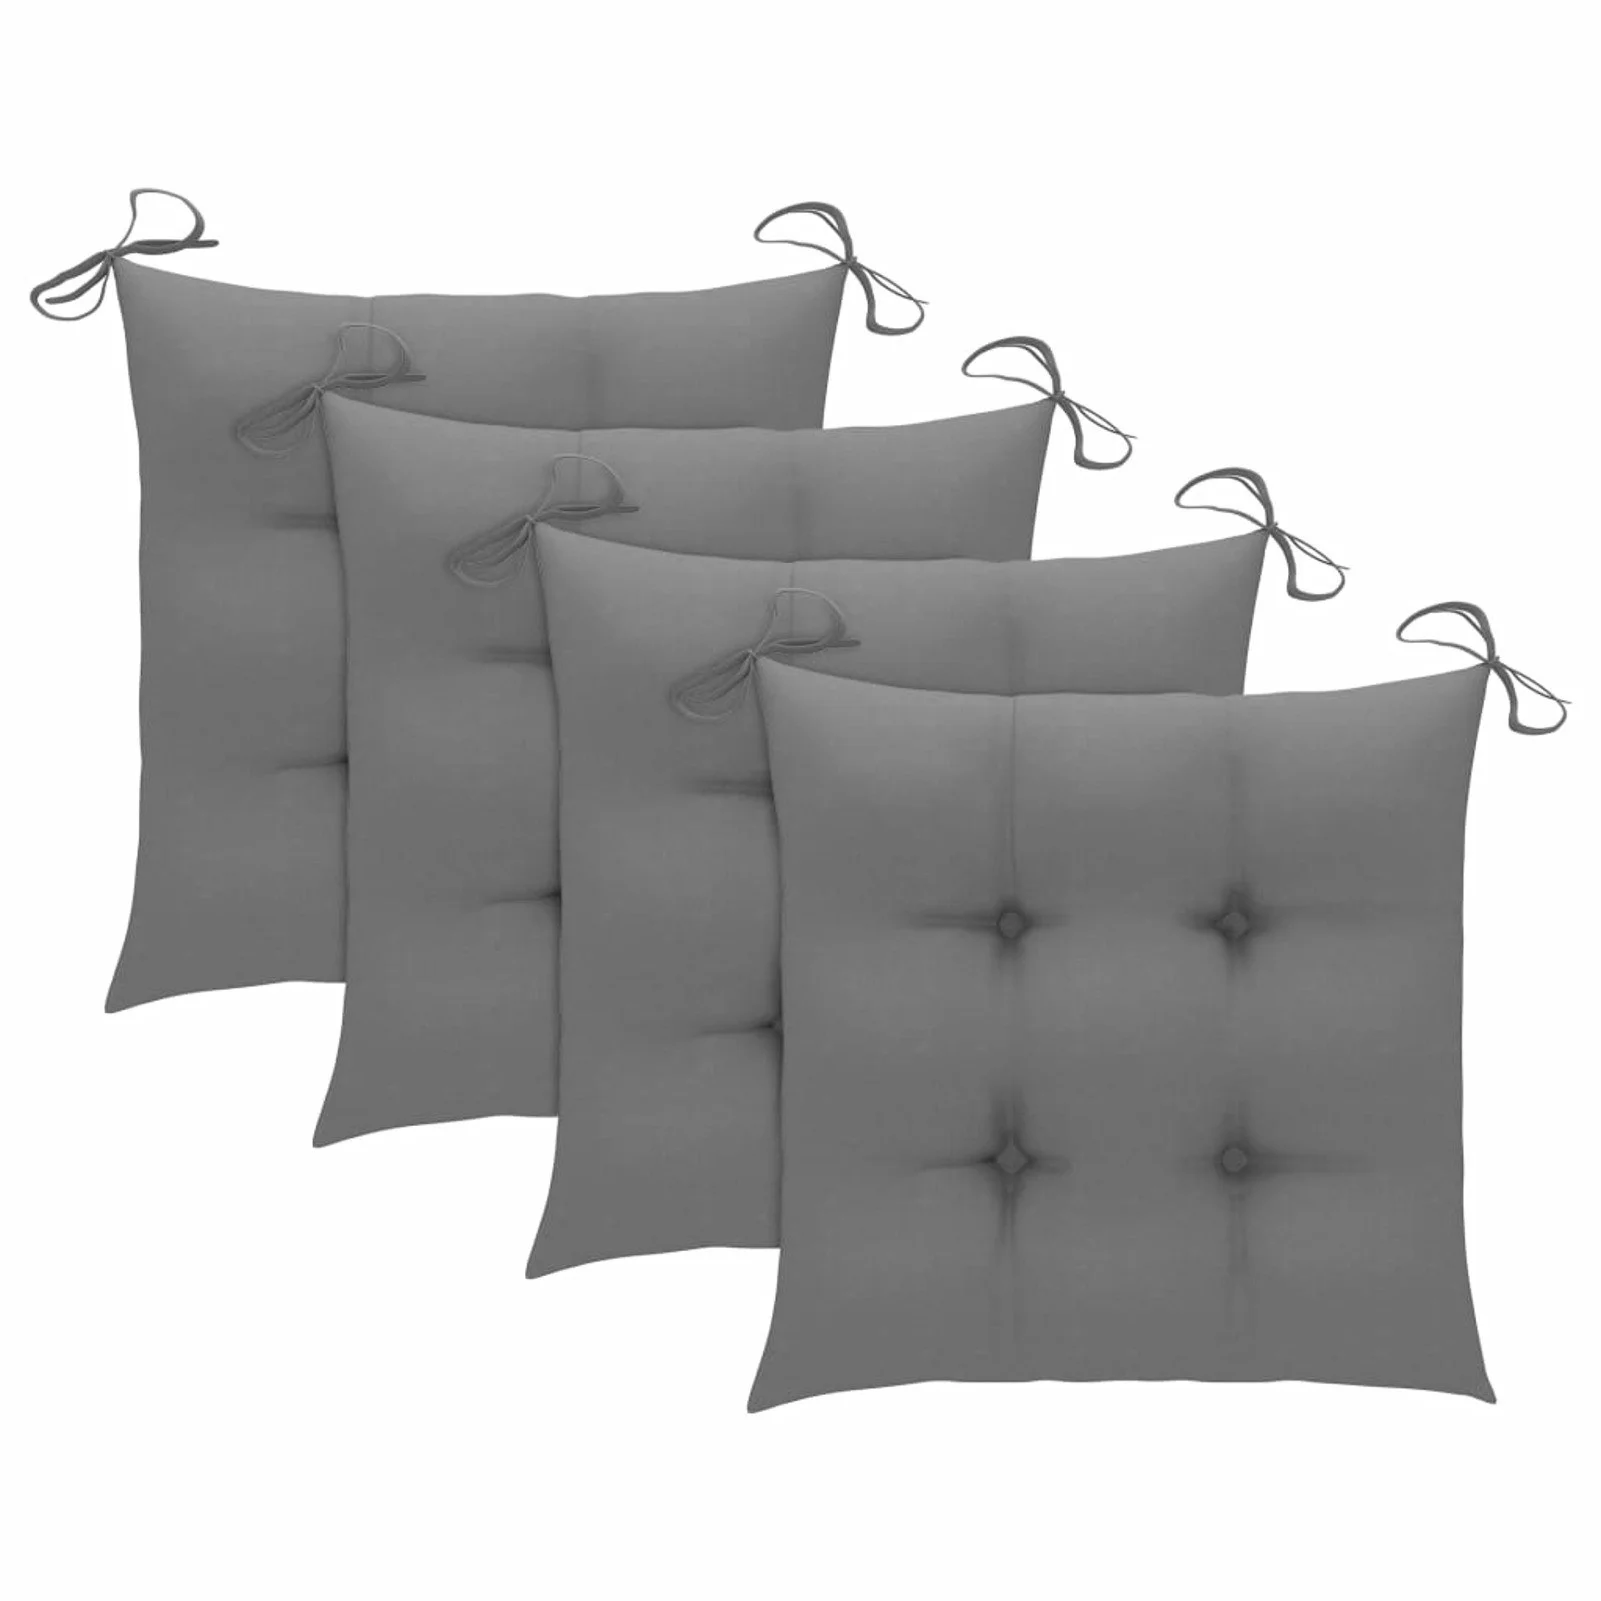 

Chair Cushions 4 pcs Gray 19.7x19.7"x2.8" Fabric"